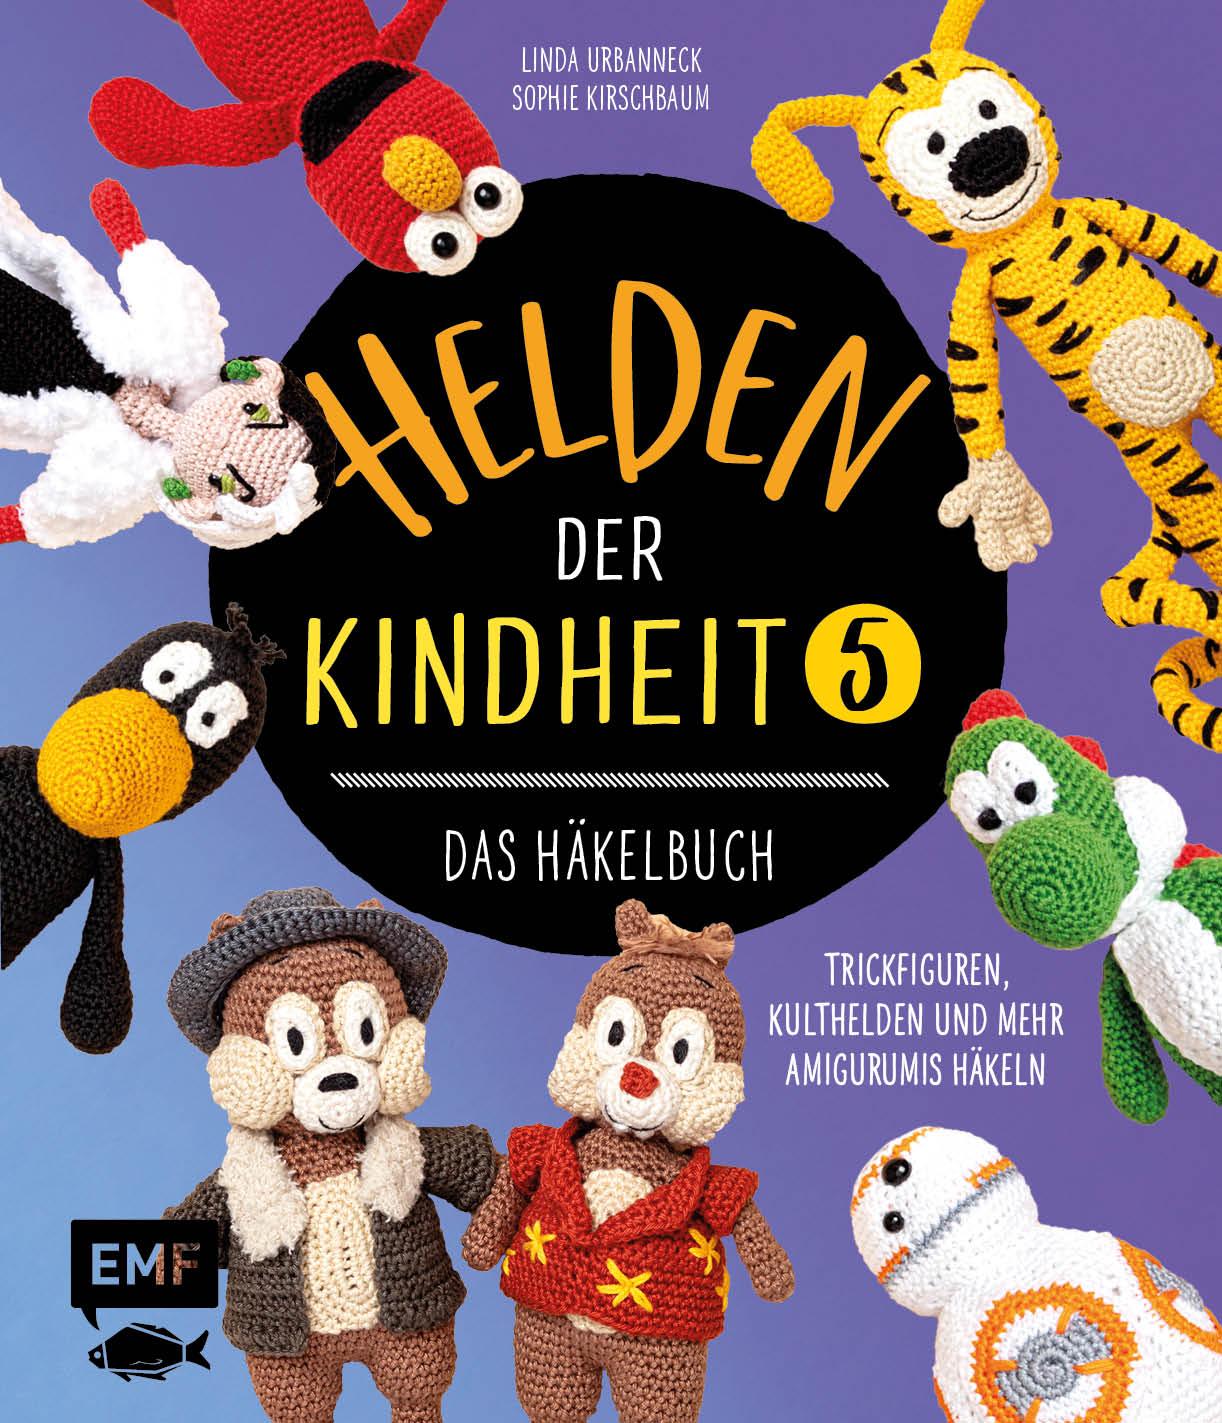 Книга Helden der Kindheit - Das Häkelbuch - Band 5 Sophie Kirschbaum